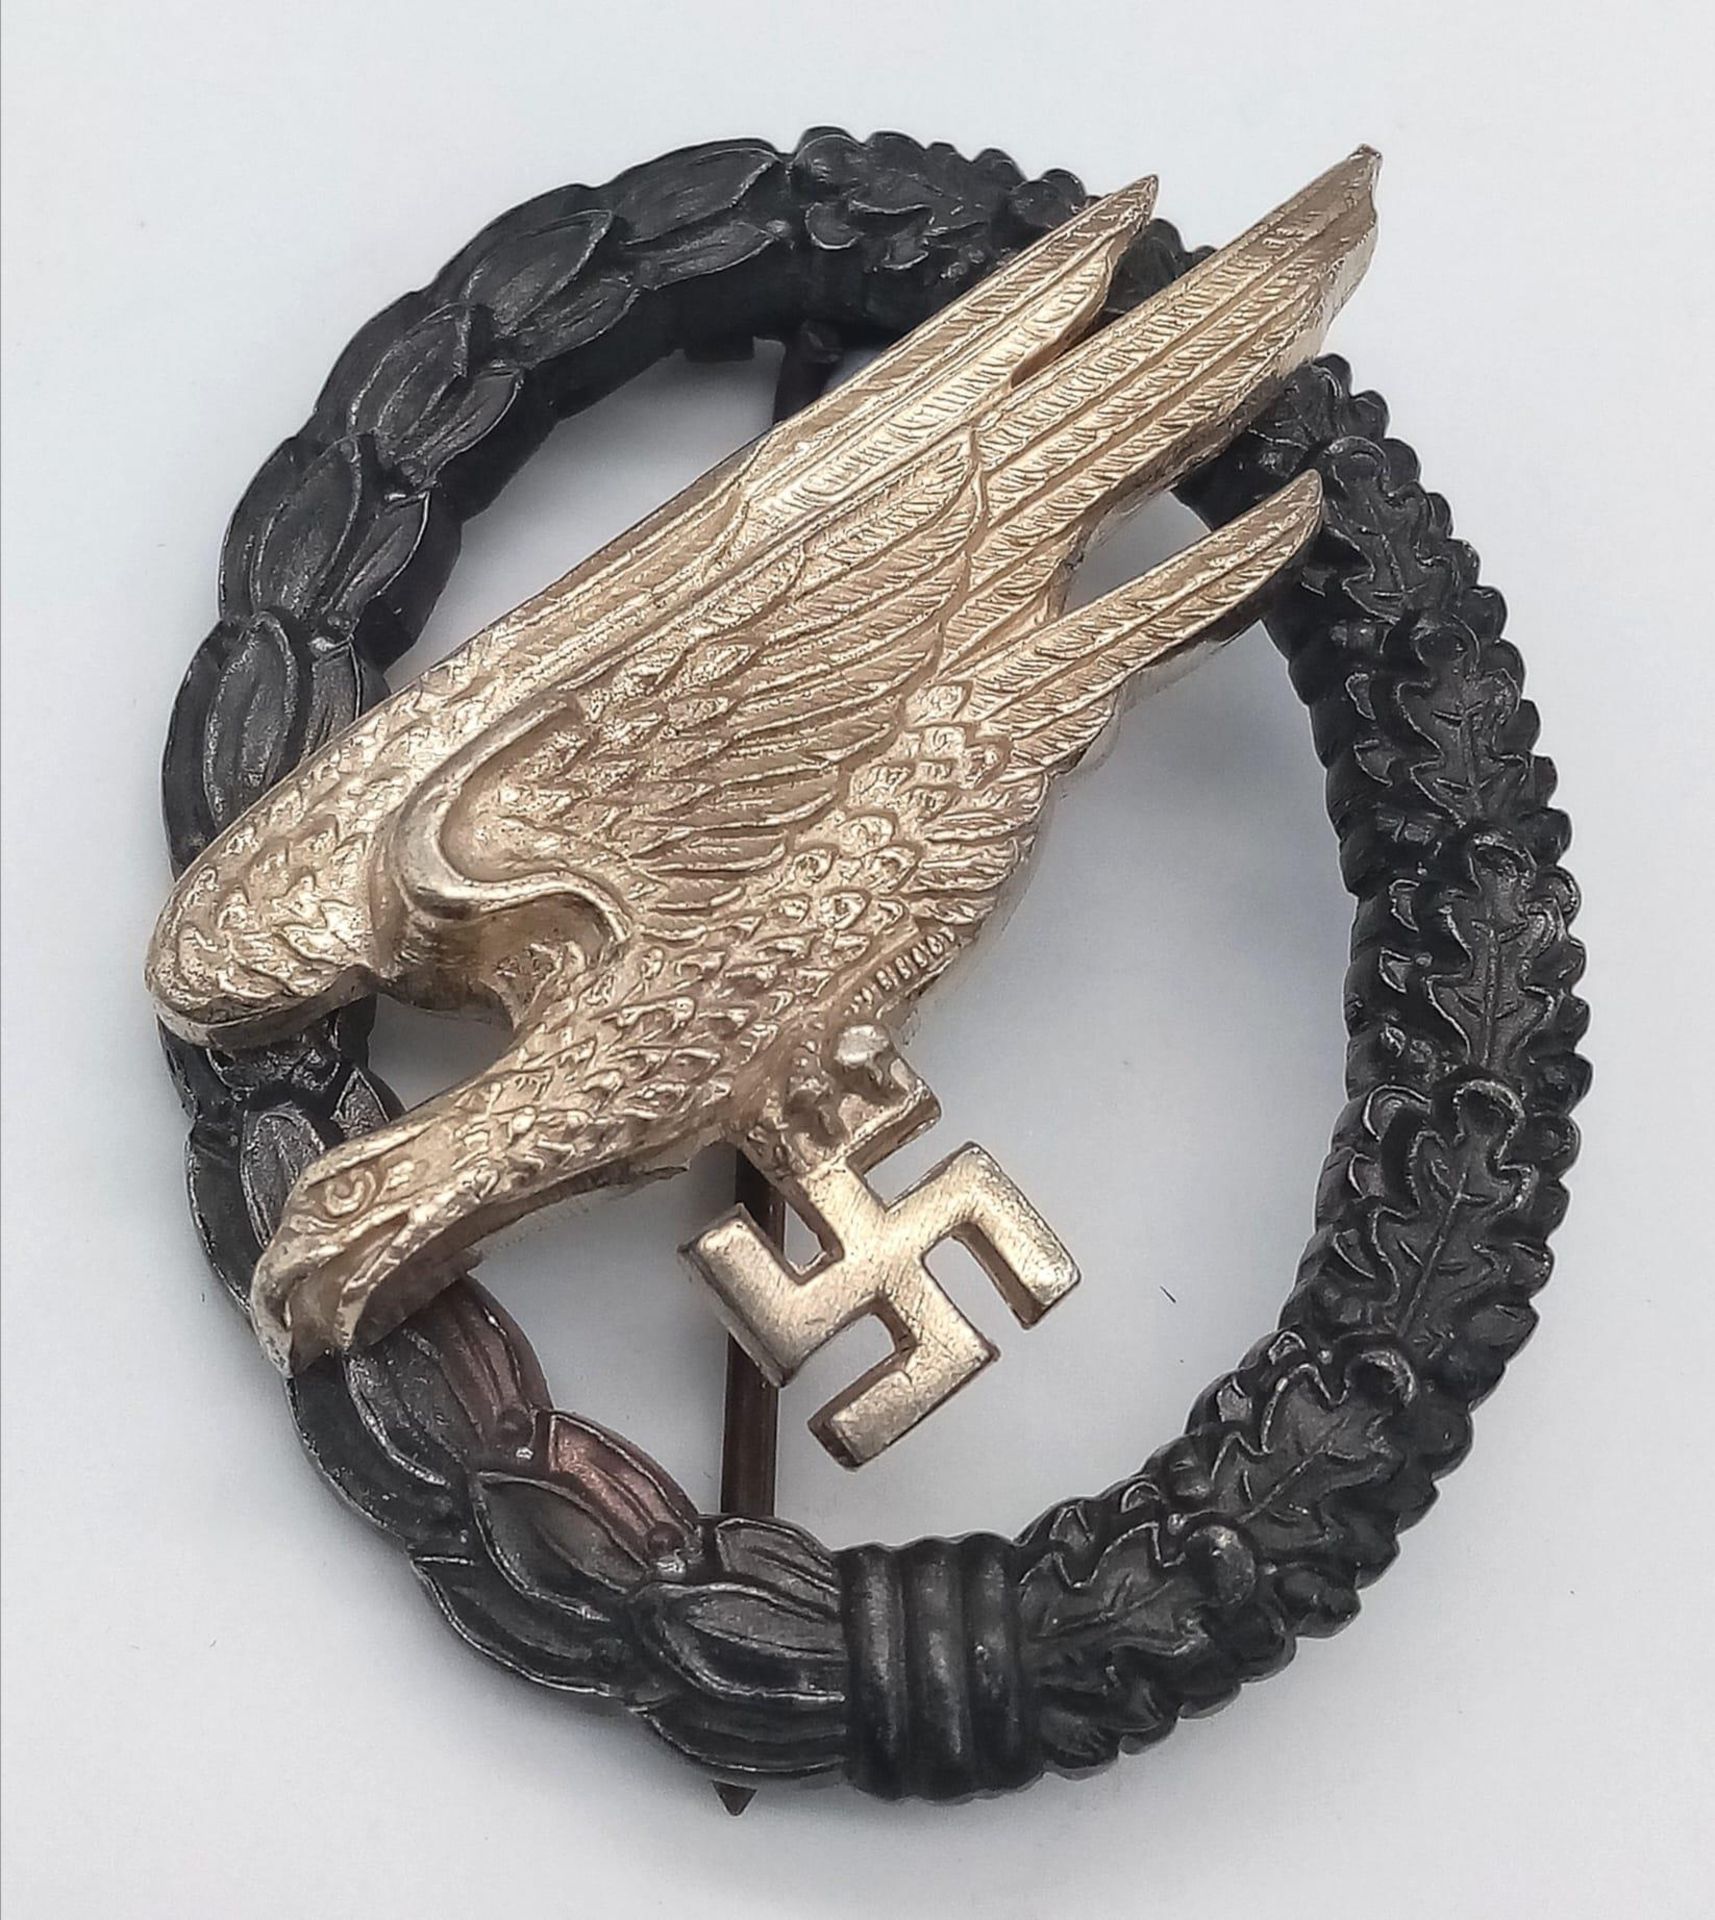 WW2 German Luftwaffe Fallschirmjäger (Paratrooper) Badge. Maker: G.H Osang, Dresden.